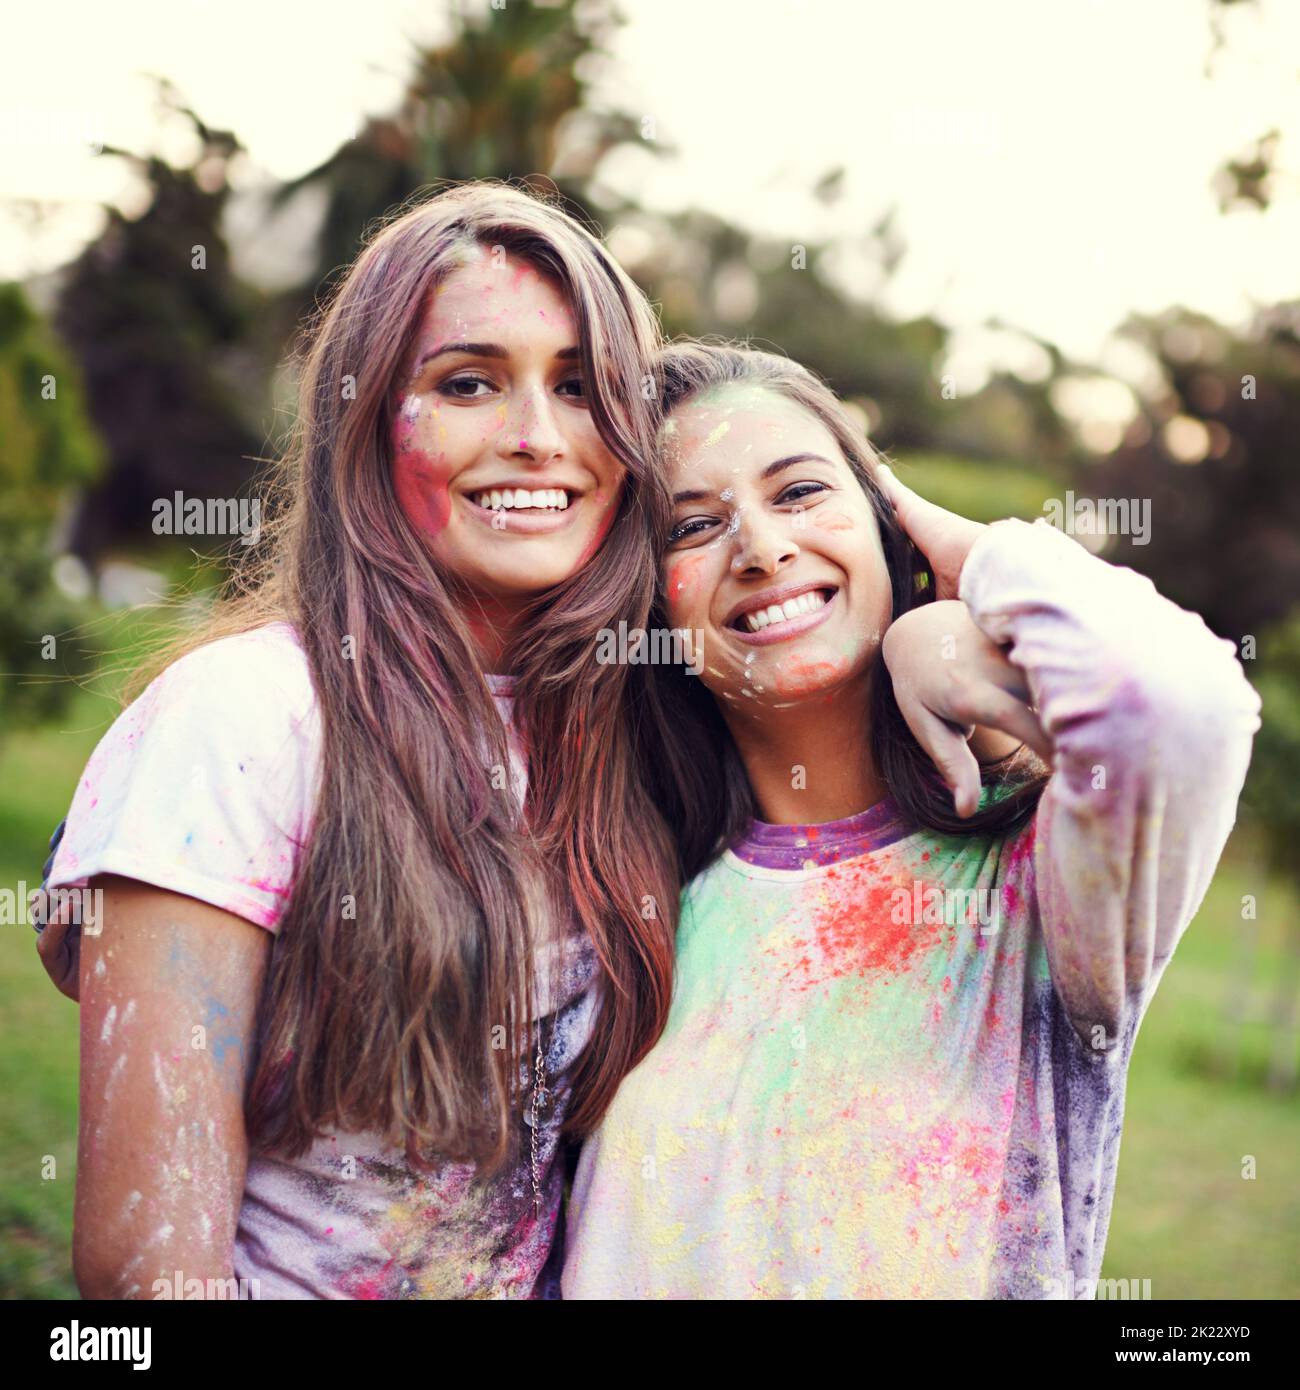 La vita è arte, vivete la vostra a colori. Ritratto di due amici che si divertono in un festival a colori. Foto Stock